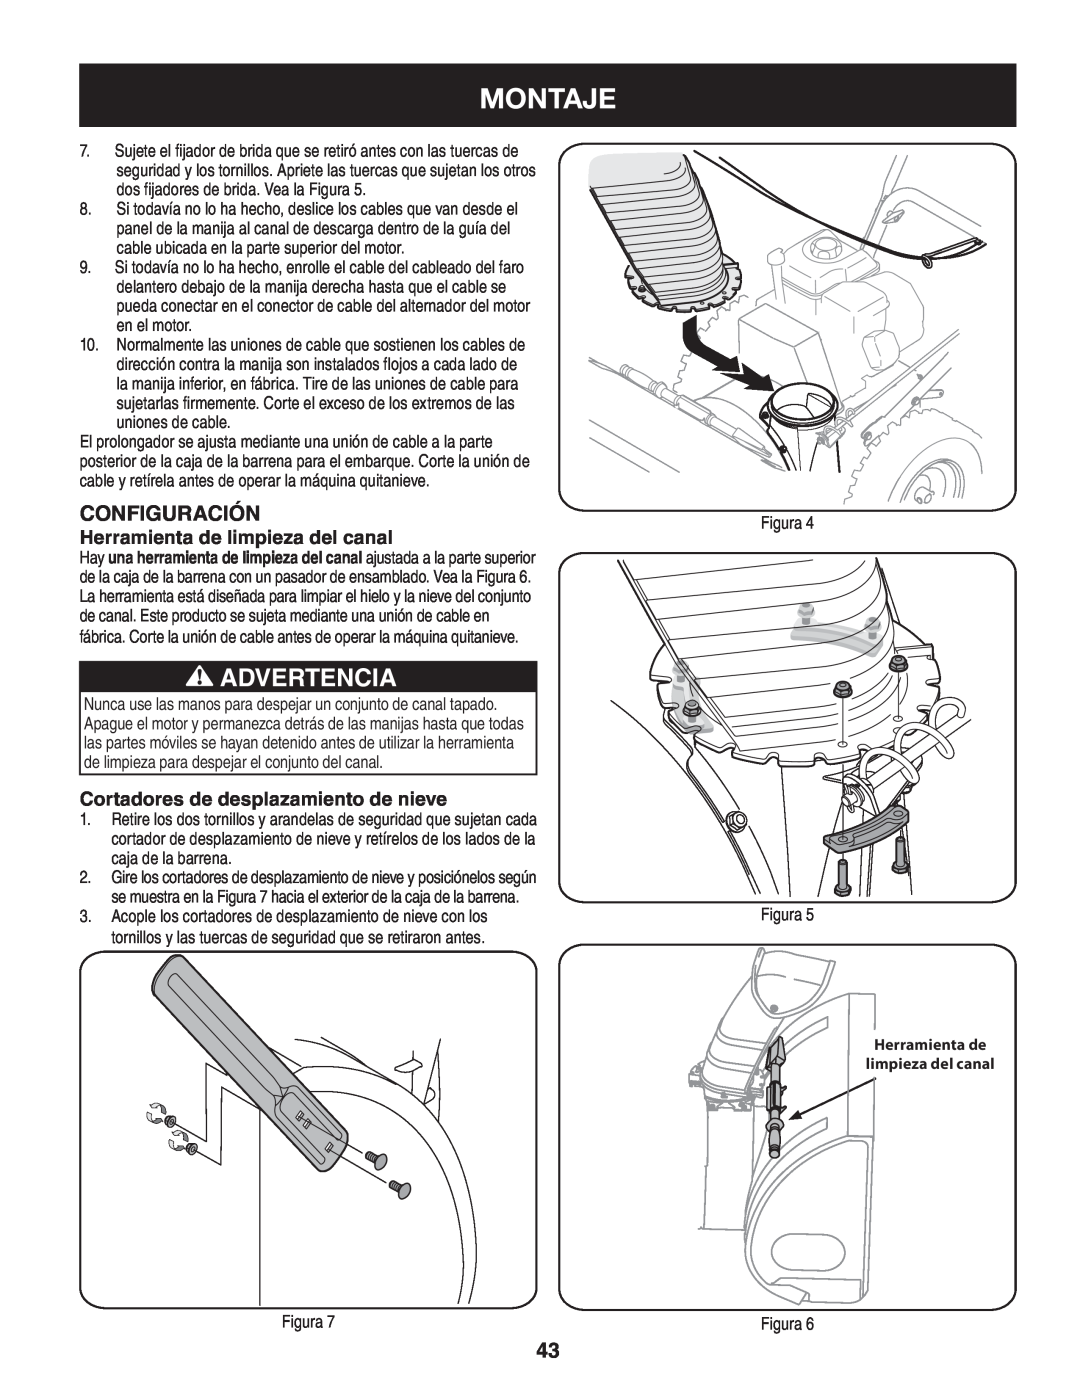 Craftsman 247.88845 manual Montaje, Advertencia, Herramienta de limpieza del canal, Cortadores de desplazamiento de nieve 